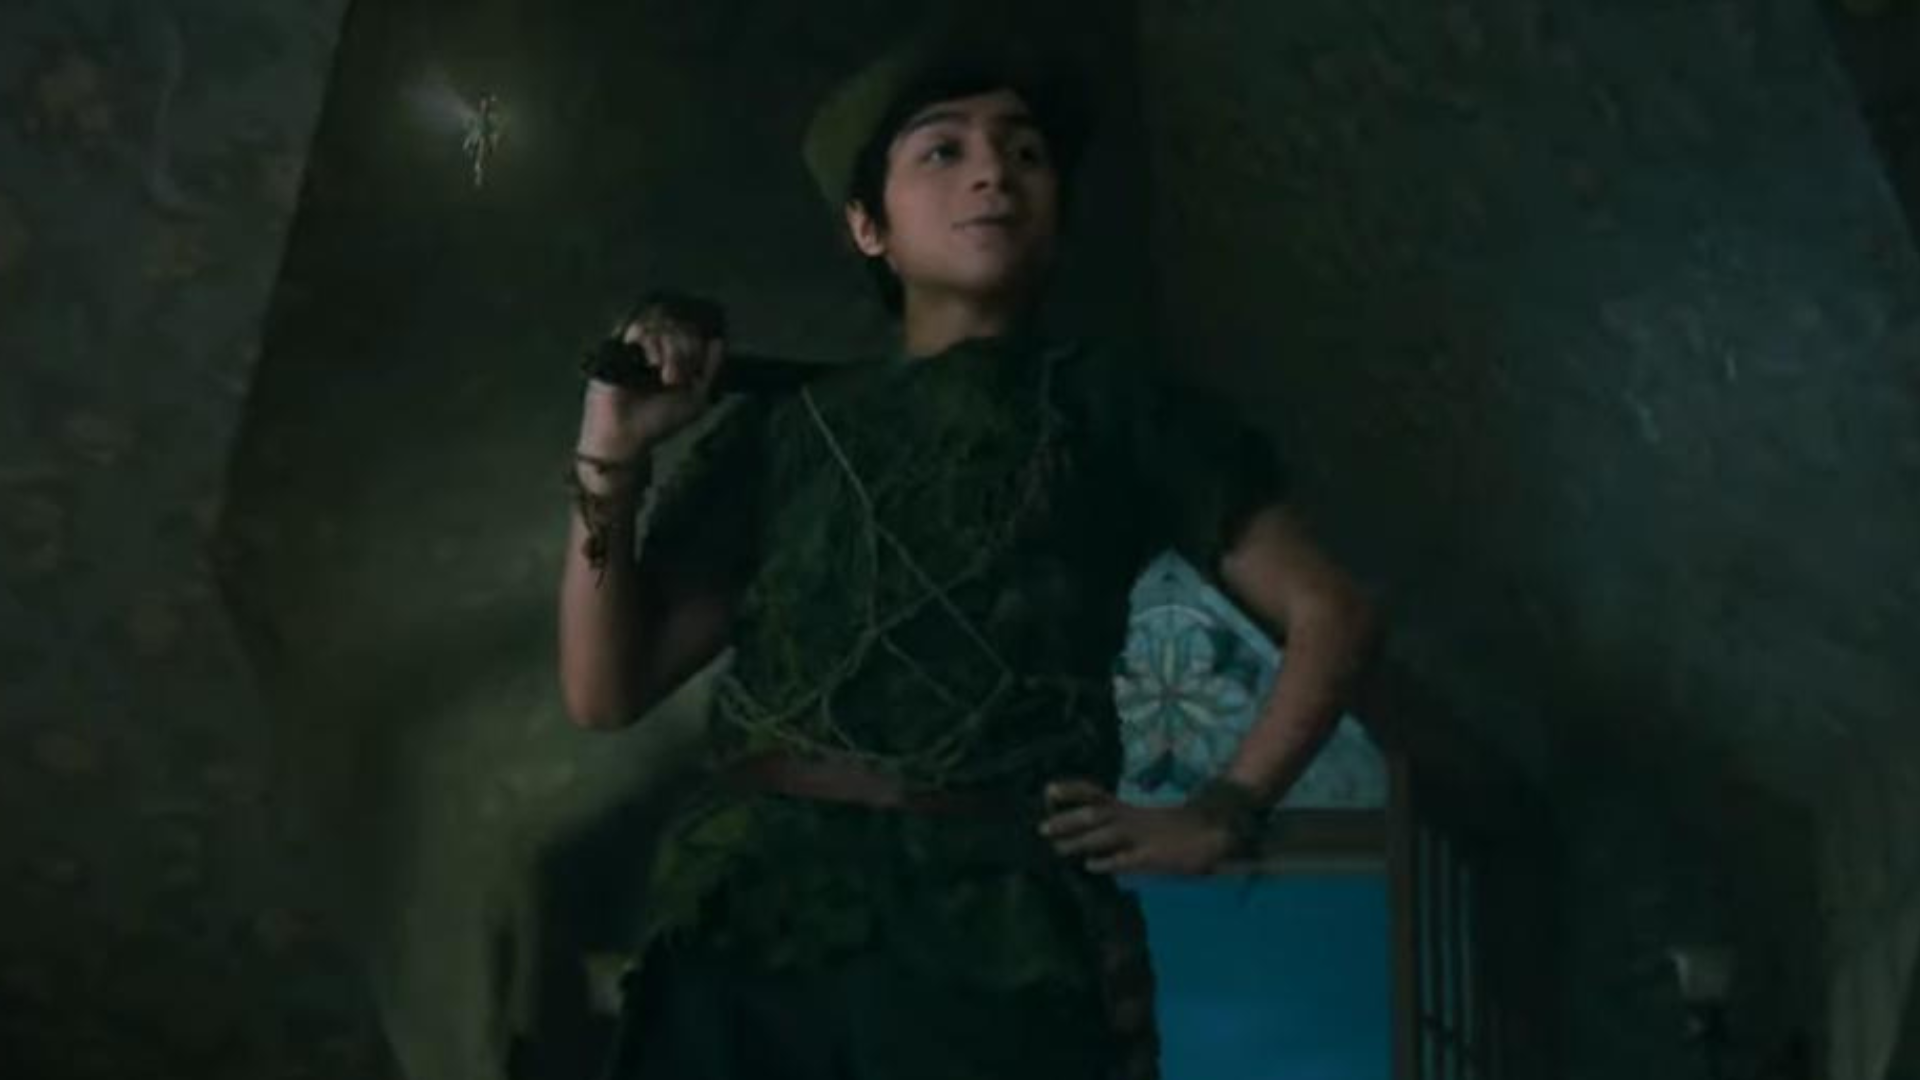 Divulgado primeiro trailer oficial de Peter Pan & Wendy